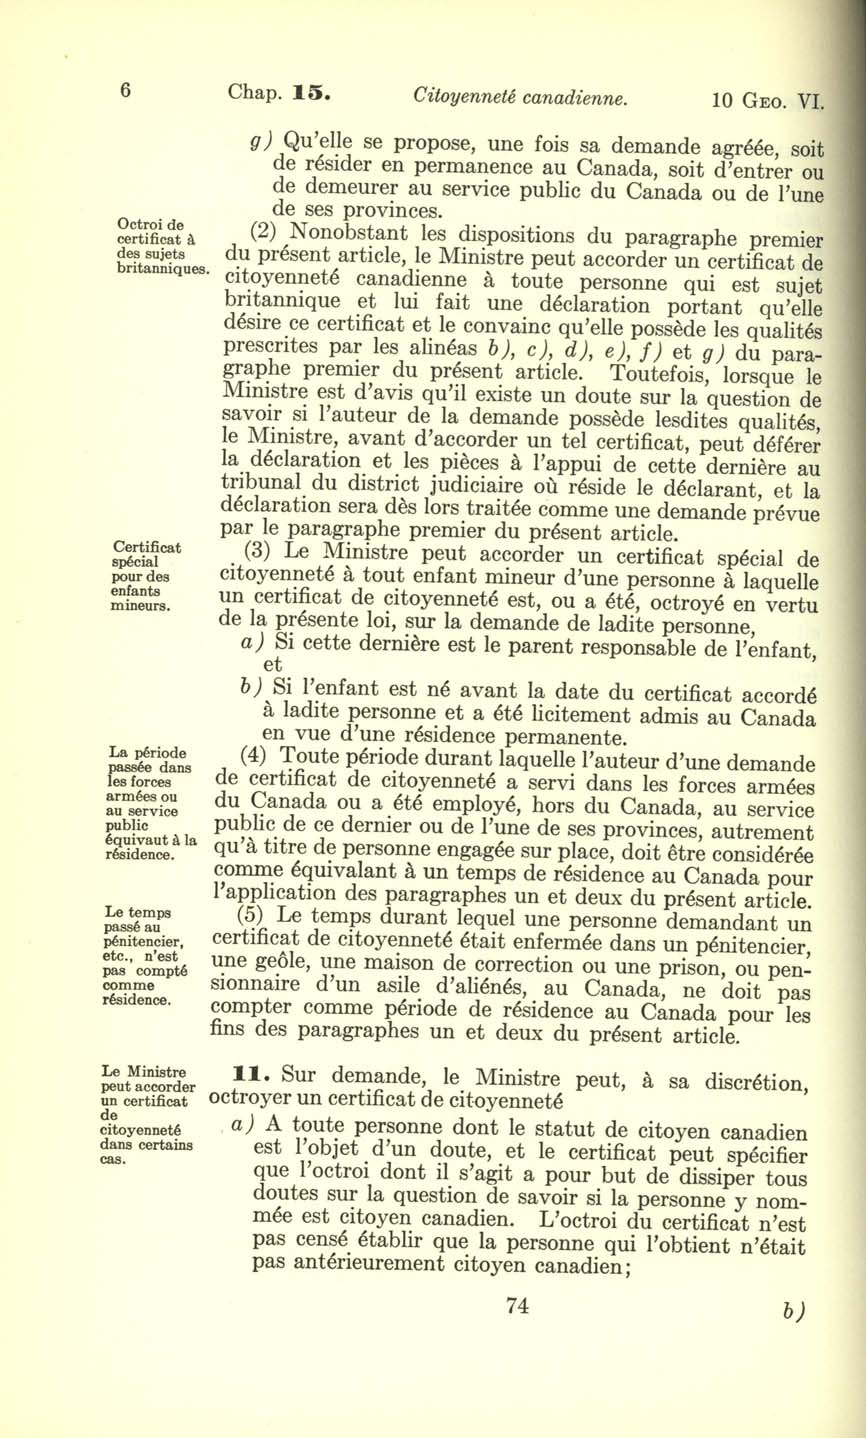 Chap. 15 Page 74 Loi sur la citoyenneté canadienne, 1947